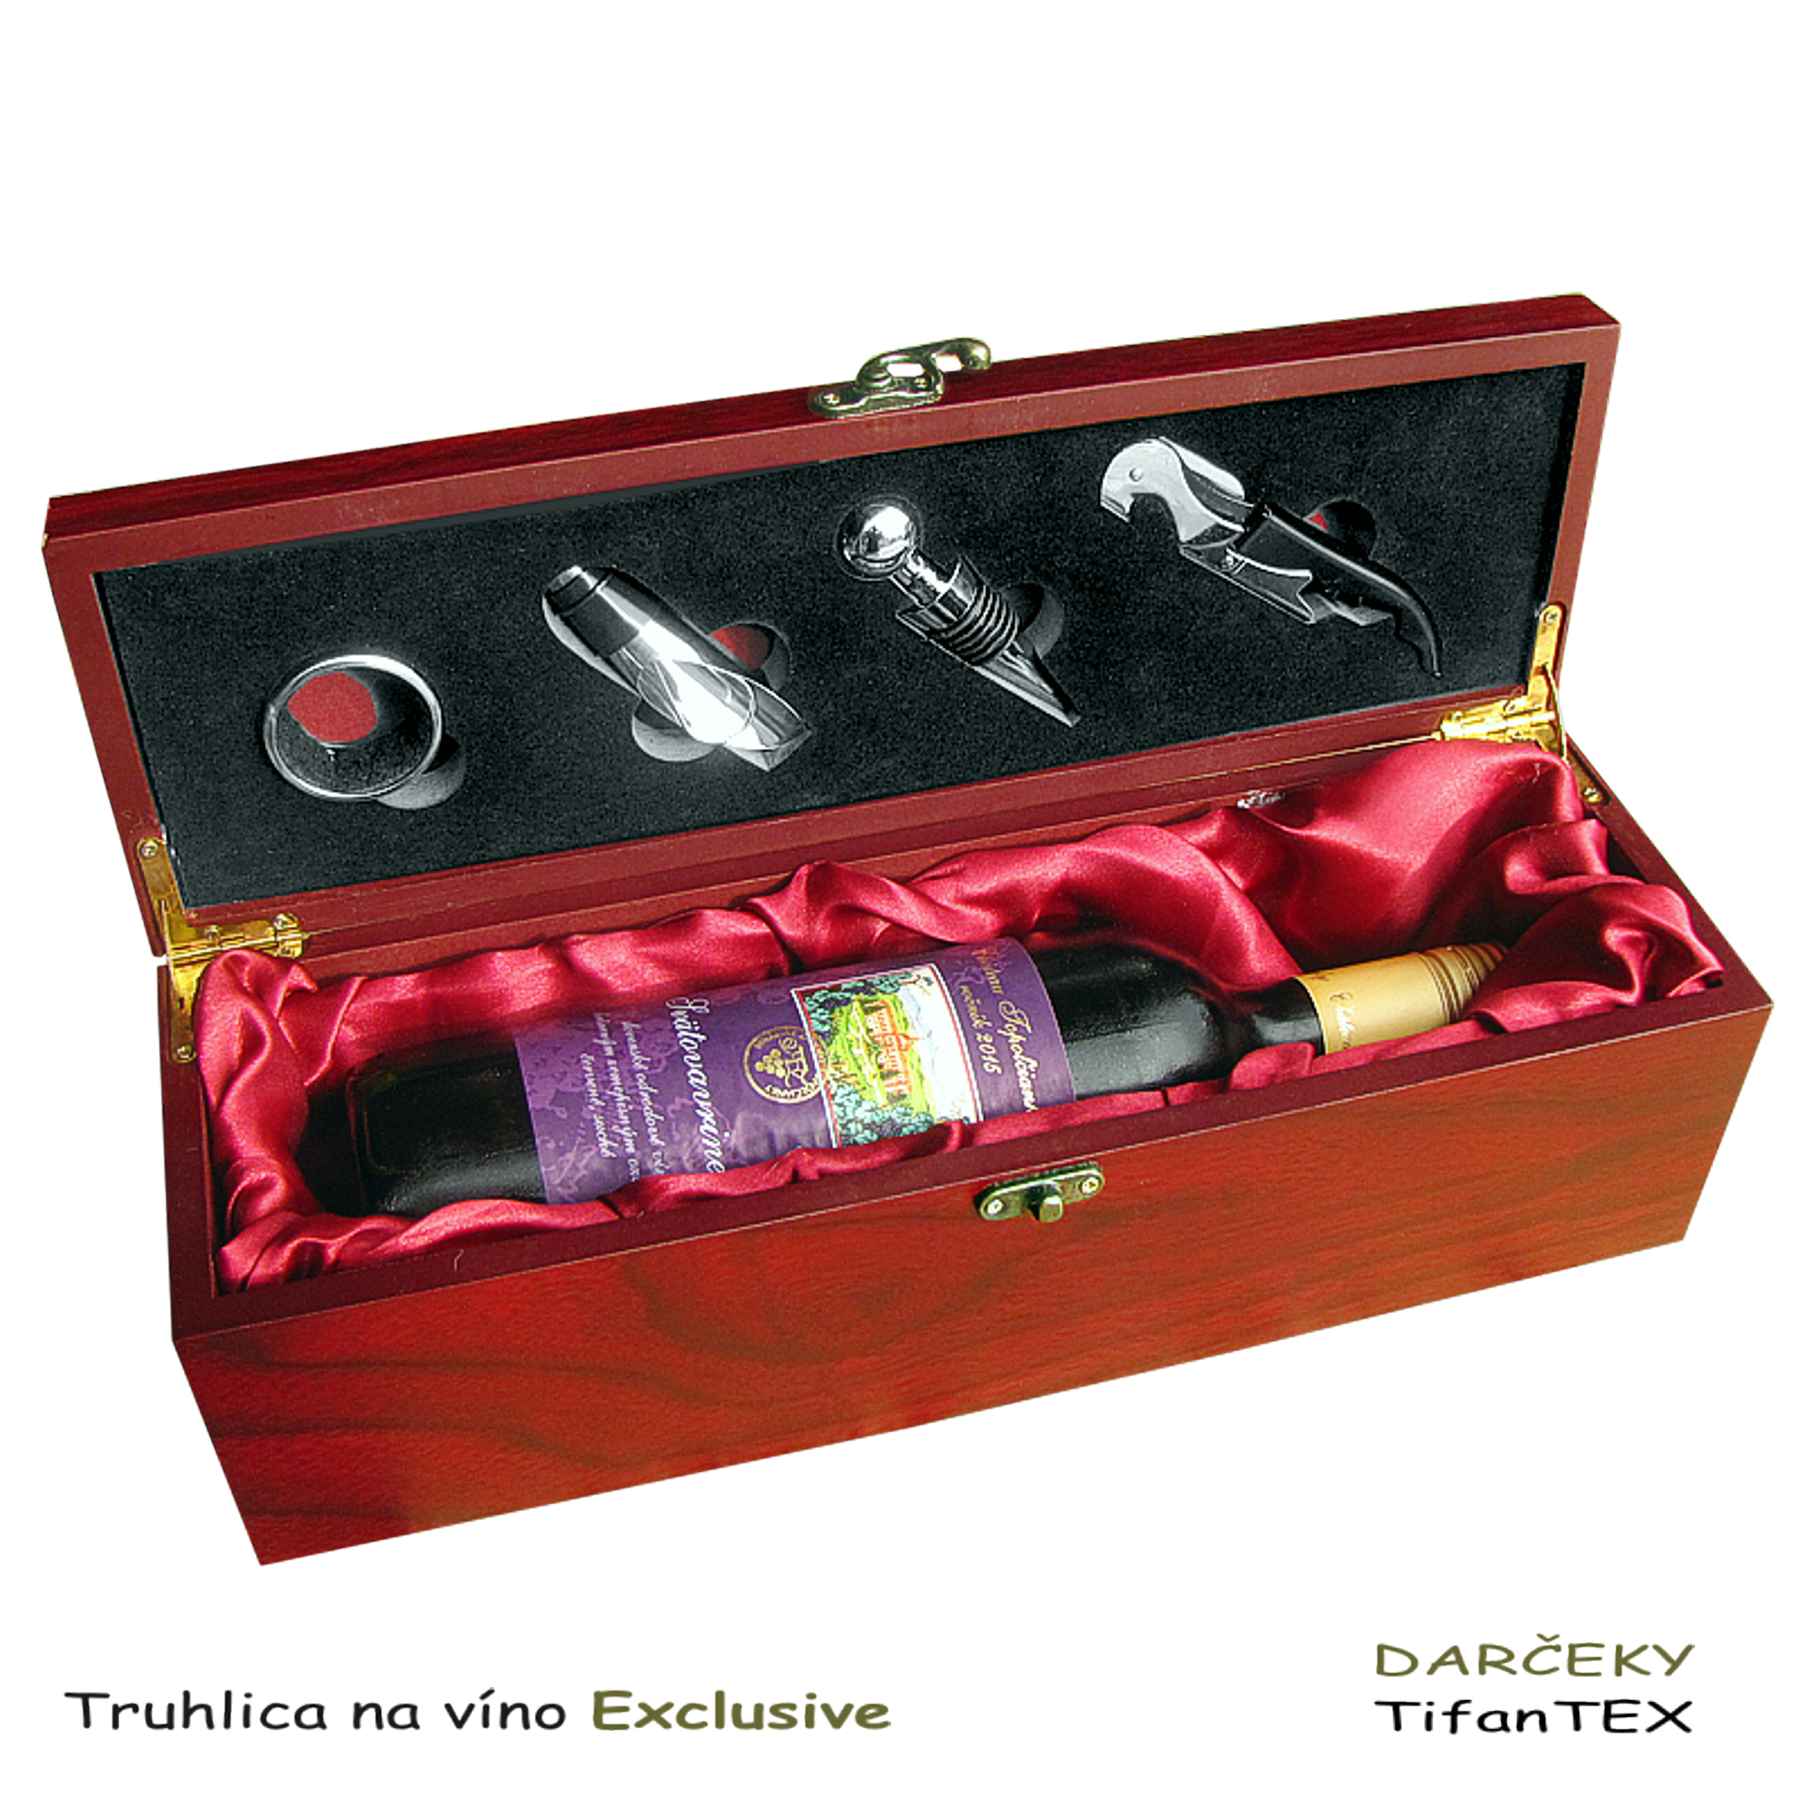 Elegantná truhlica na víno Exclusive, Tifantex darčeky